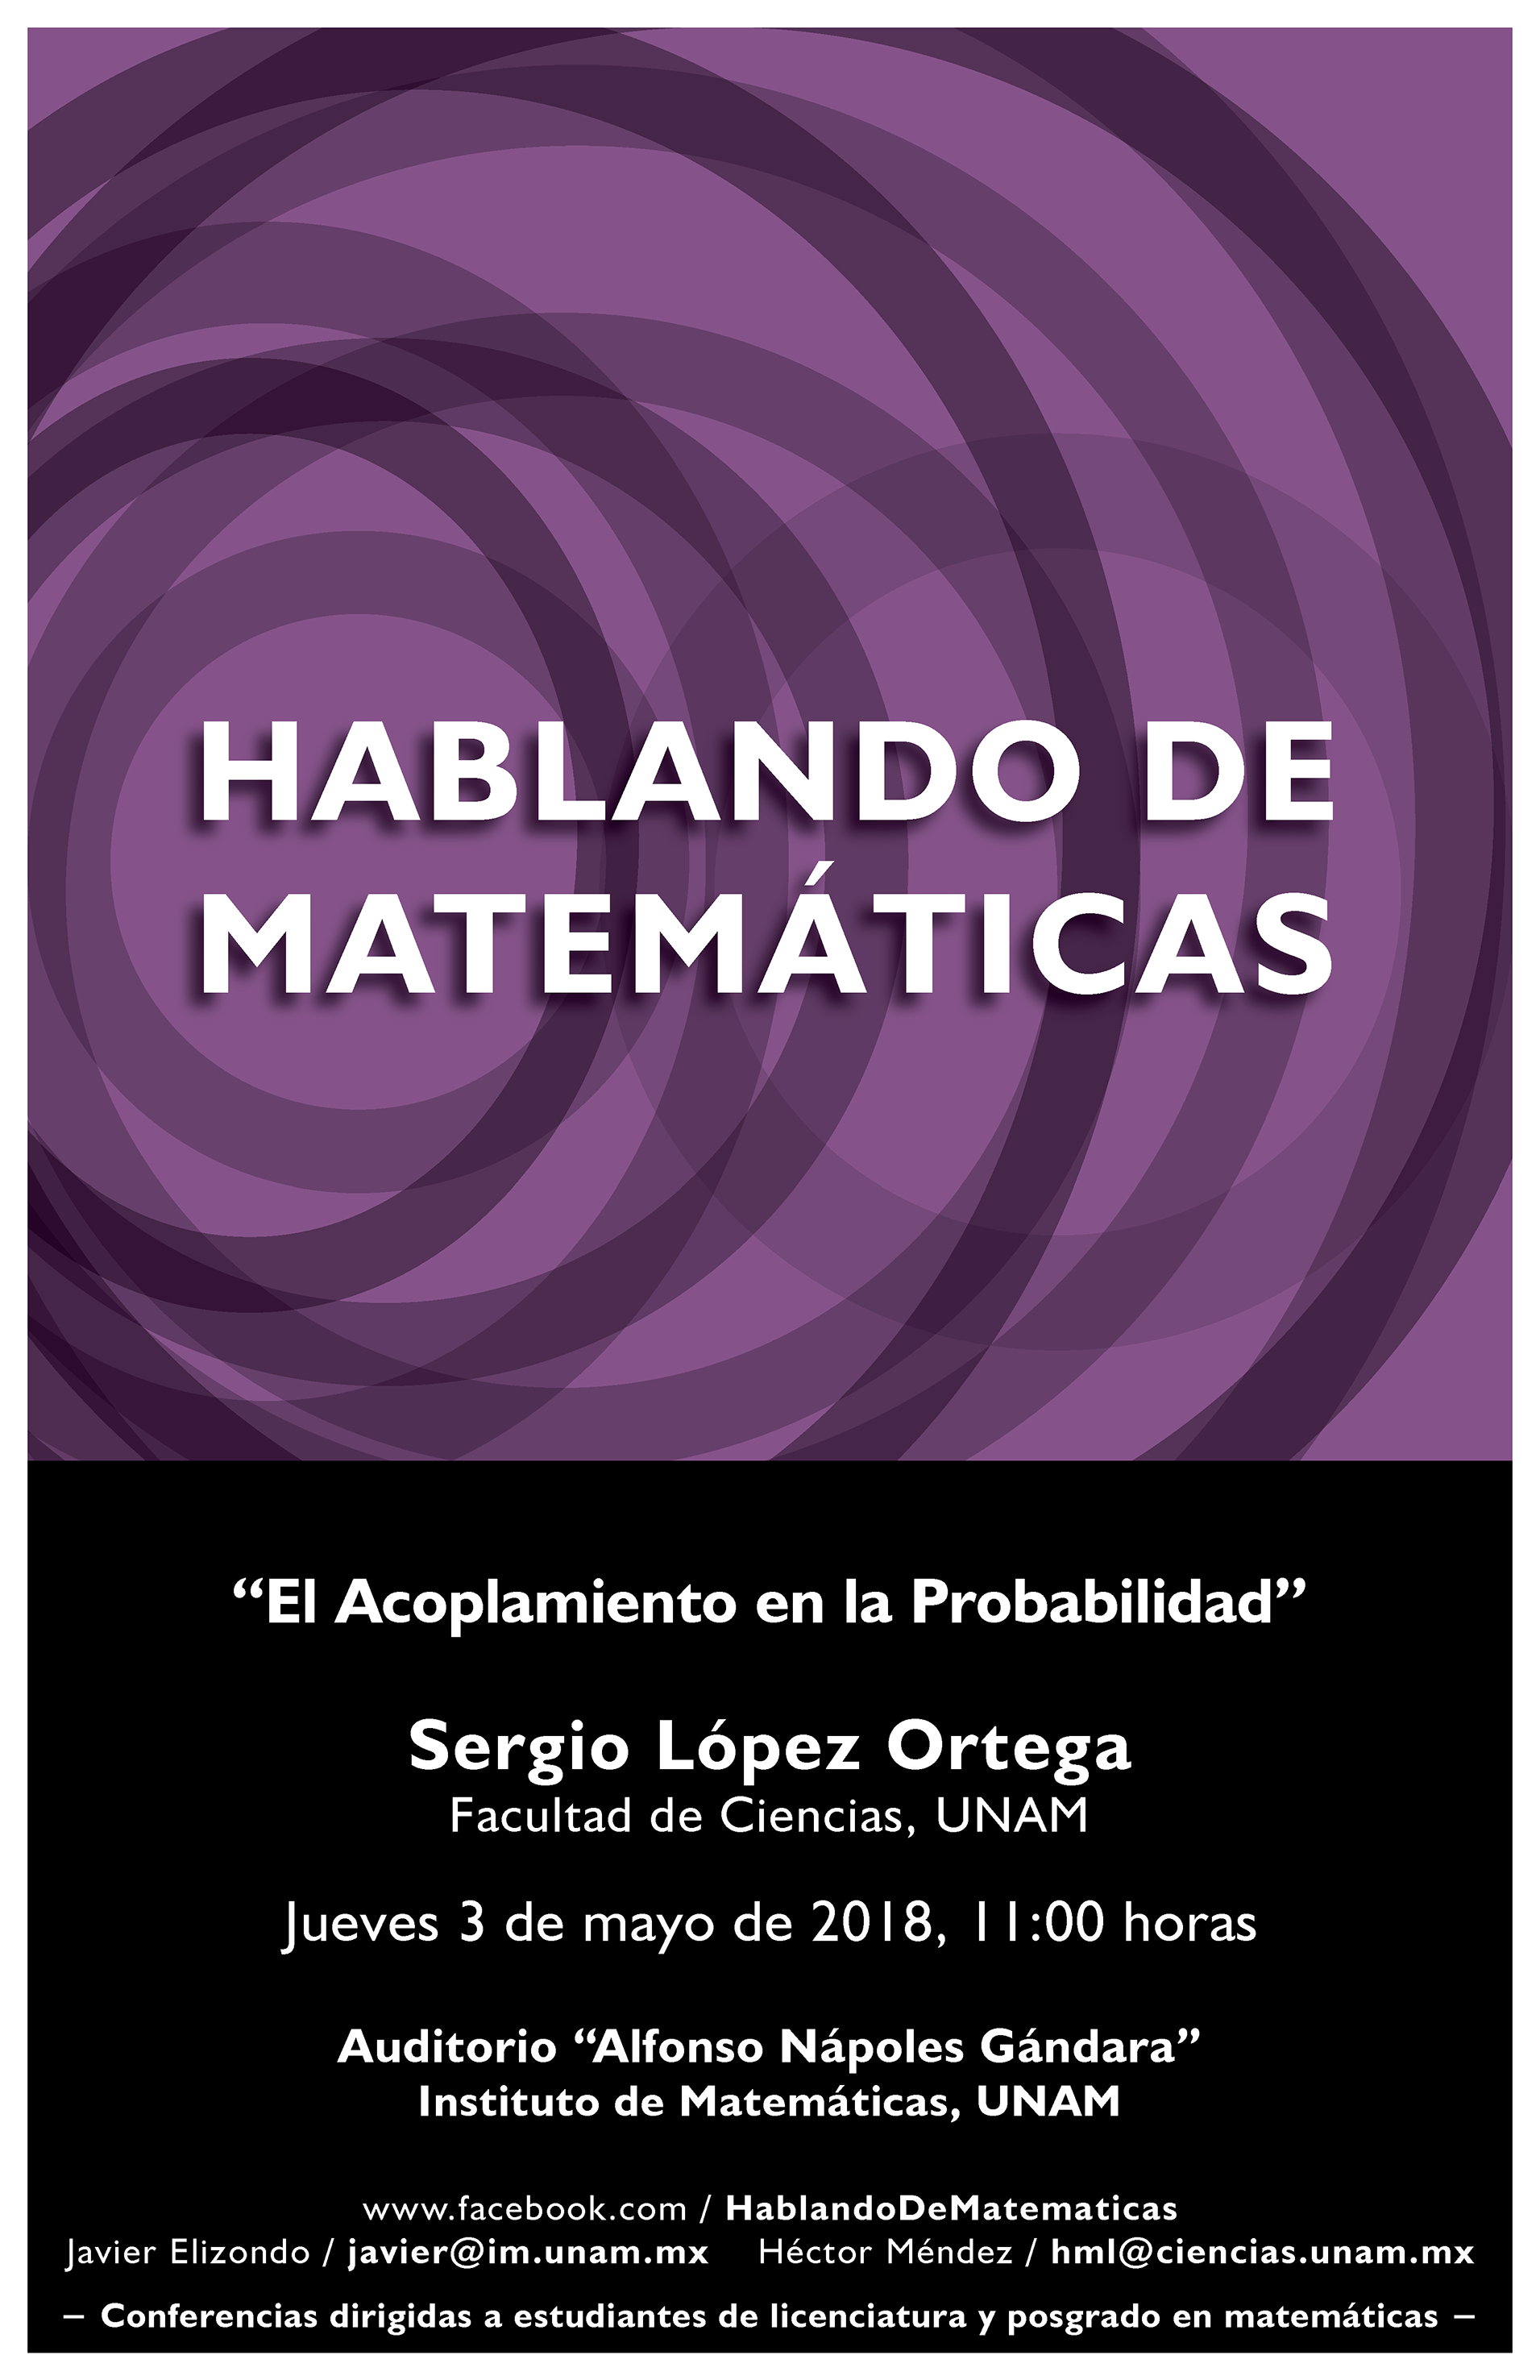 Hablando de Matemáticas: Sergio López Ortega, Facultad de Ciencias, UNAM 